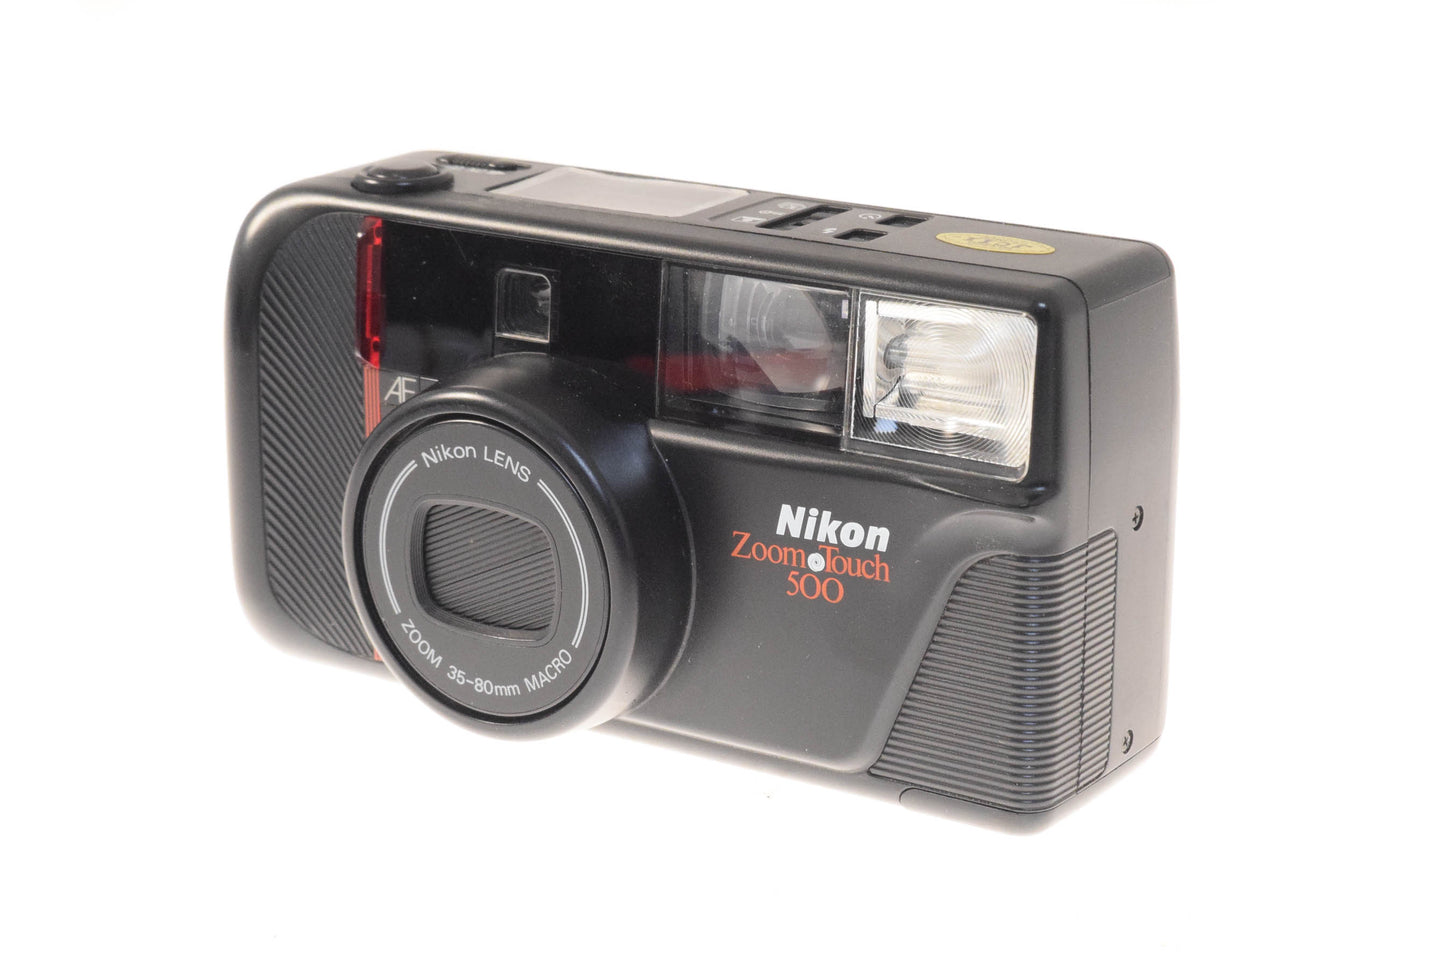 Nikon Zoom Touch 500